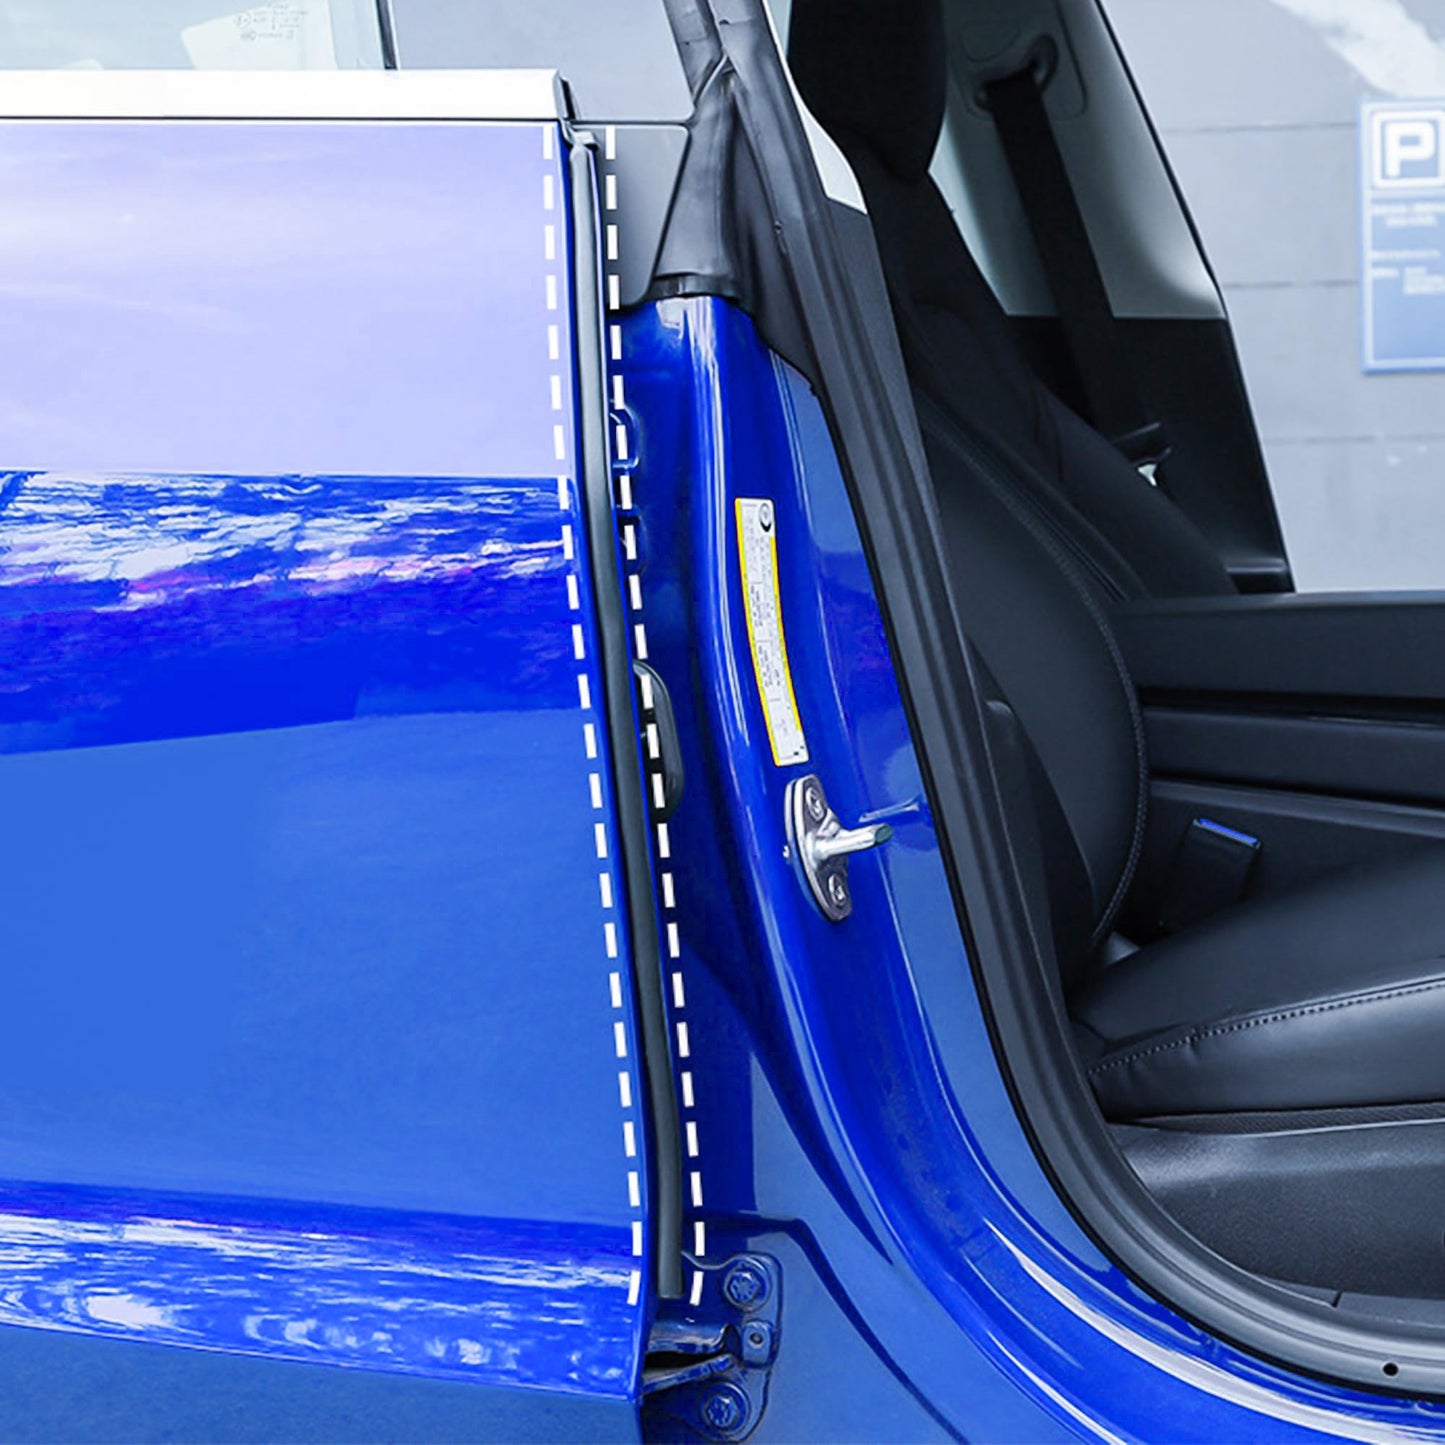 TOPABYTE Sunroof Rubber Seal Kit for All Model Y Model 3 Model S